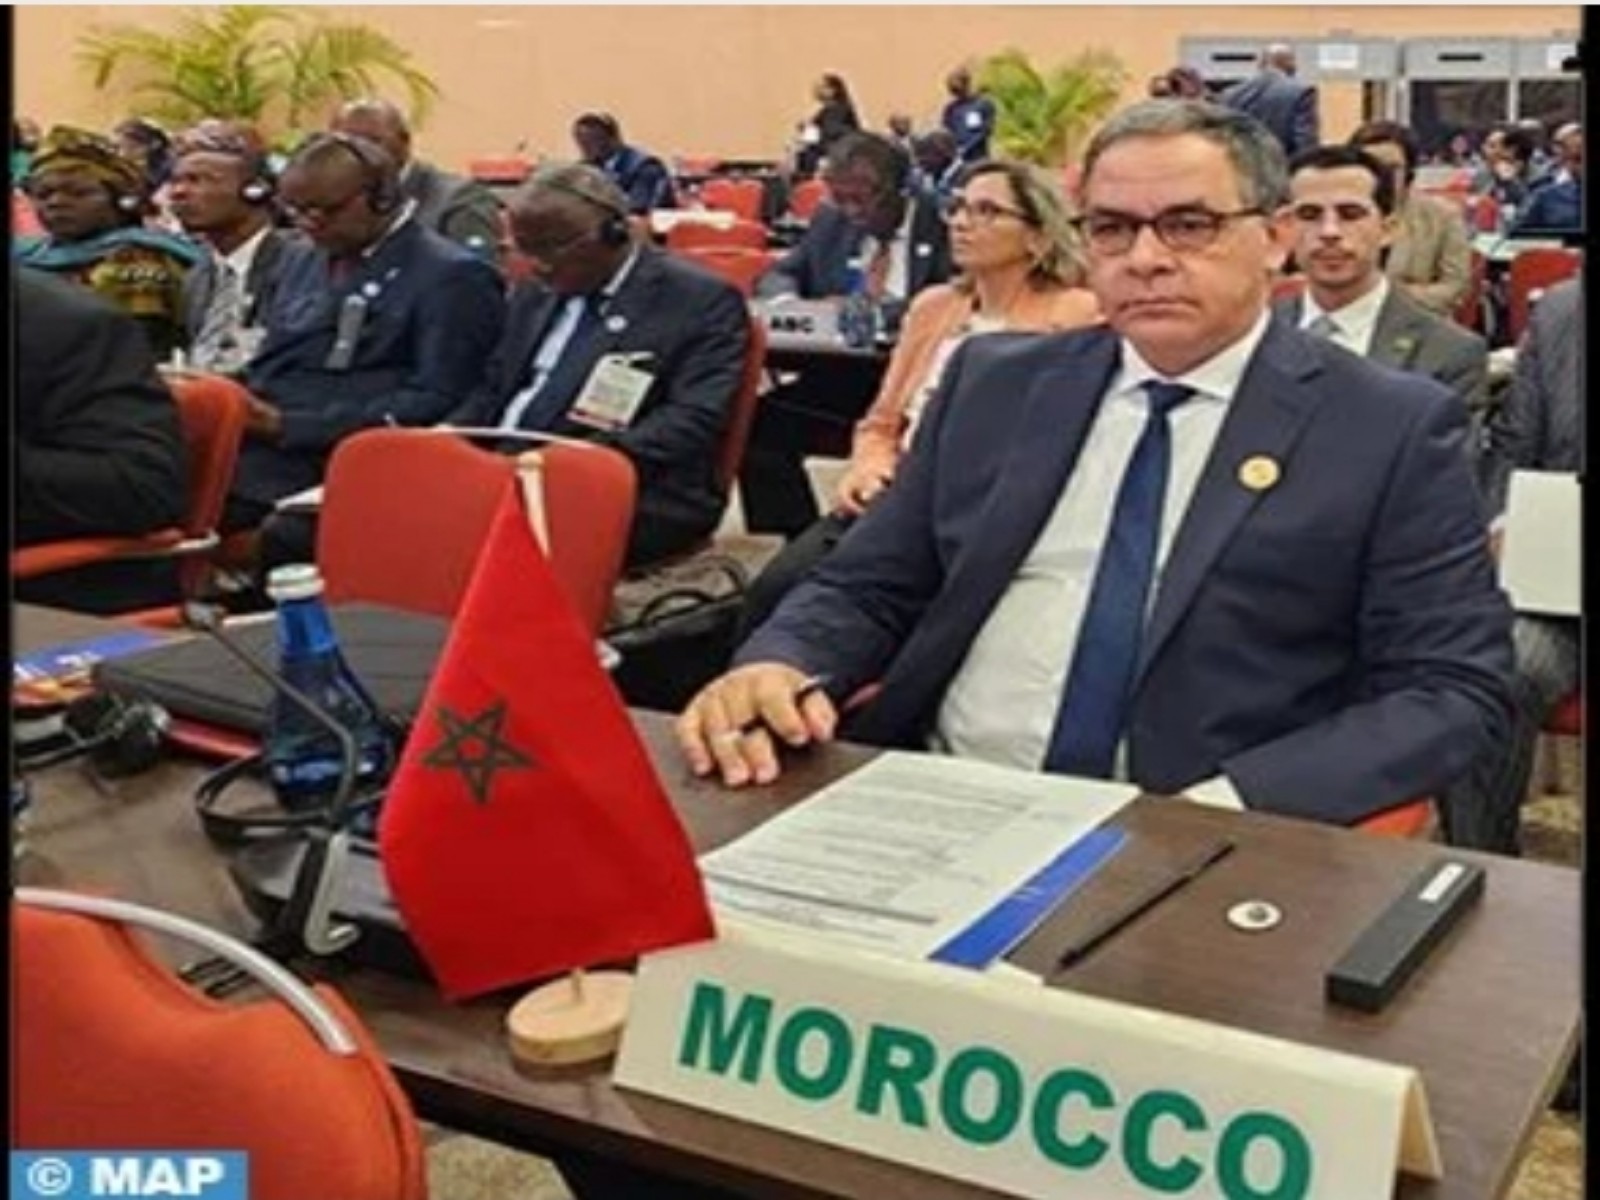 الاتحاد الإفريقي.. المغرب يبرز بكيغالي أهمية التعاون الإفريقي في التنزيل الأمثل للخطة العشرية الثانية لأجندة 2063